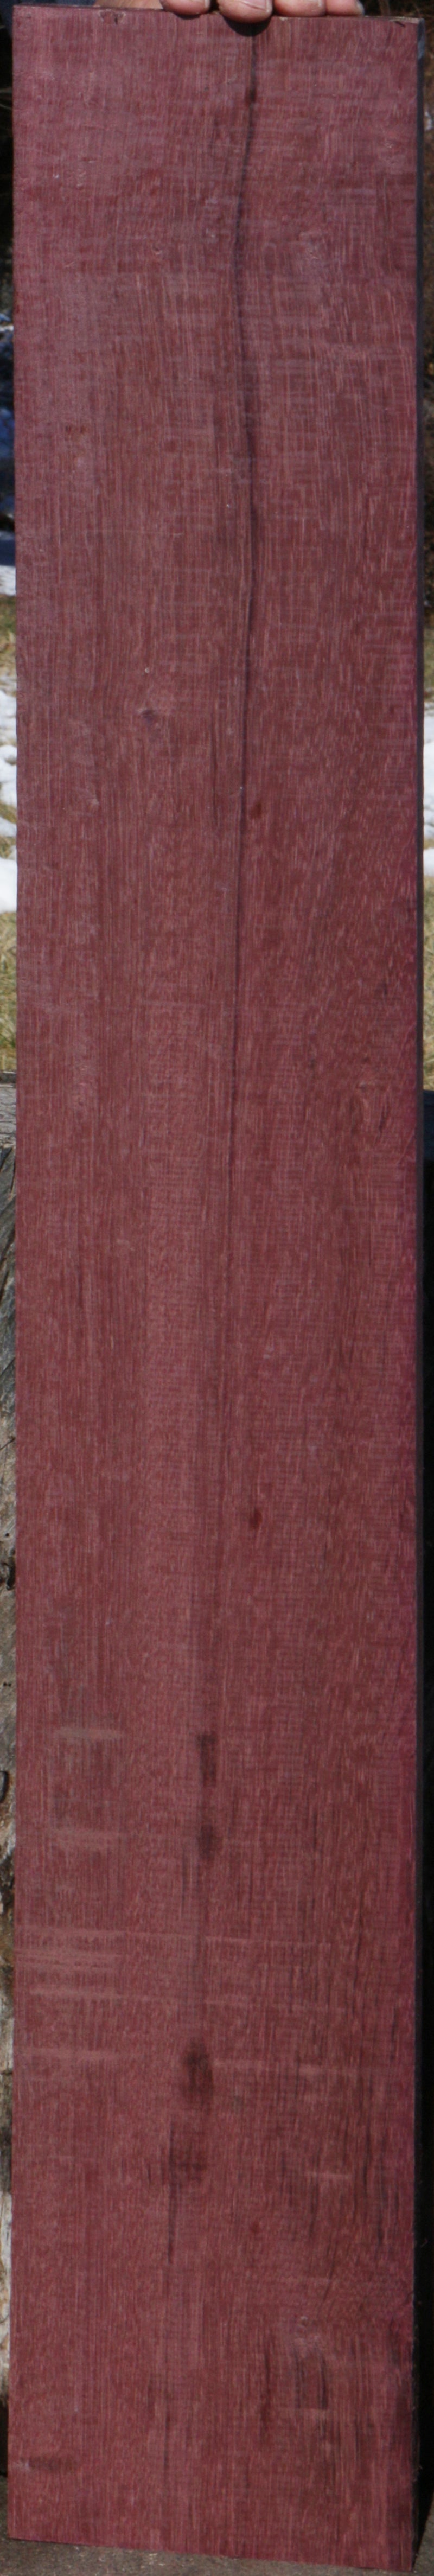 Extra Fancy Purpleheart Lumber